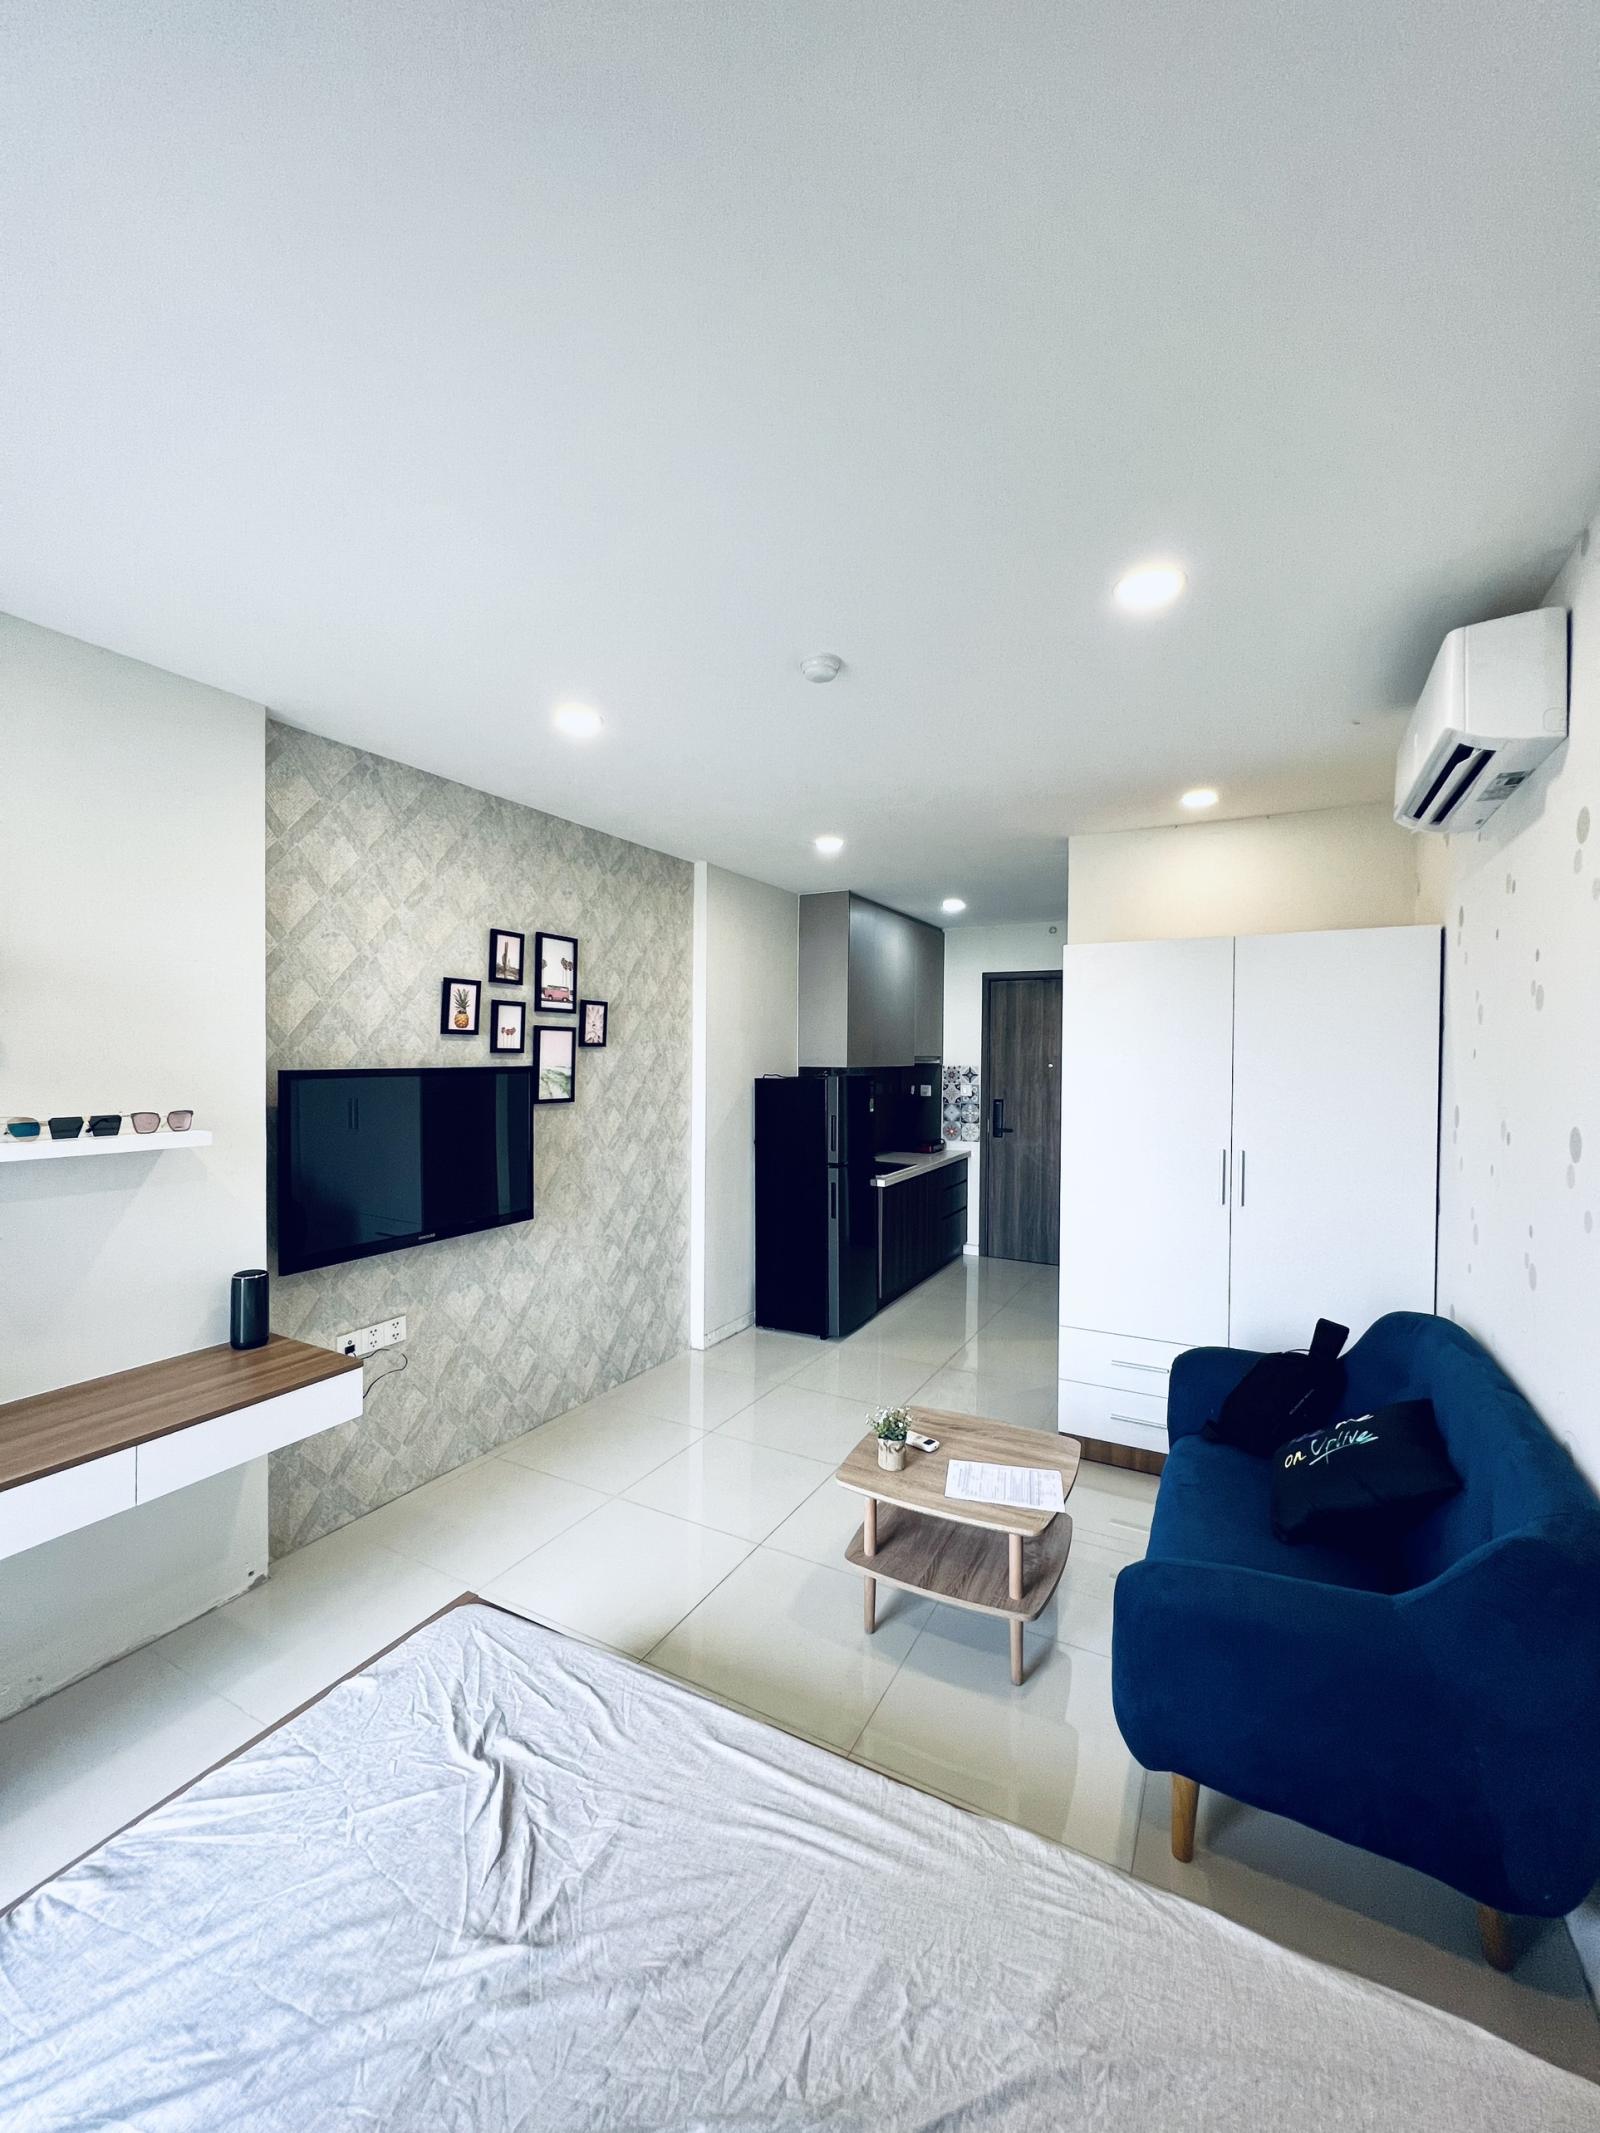 Cho thuê căn hộ quận 7 trên đường Nguyễn Văn Linh Full nội thất giá 10 triệu/ tháng